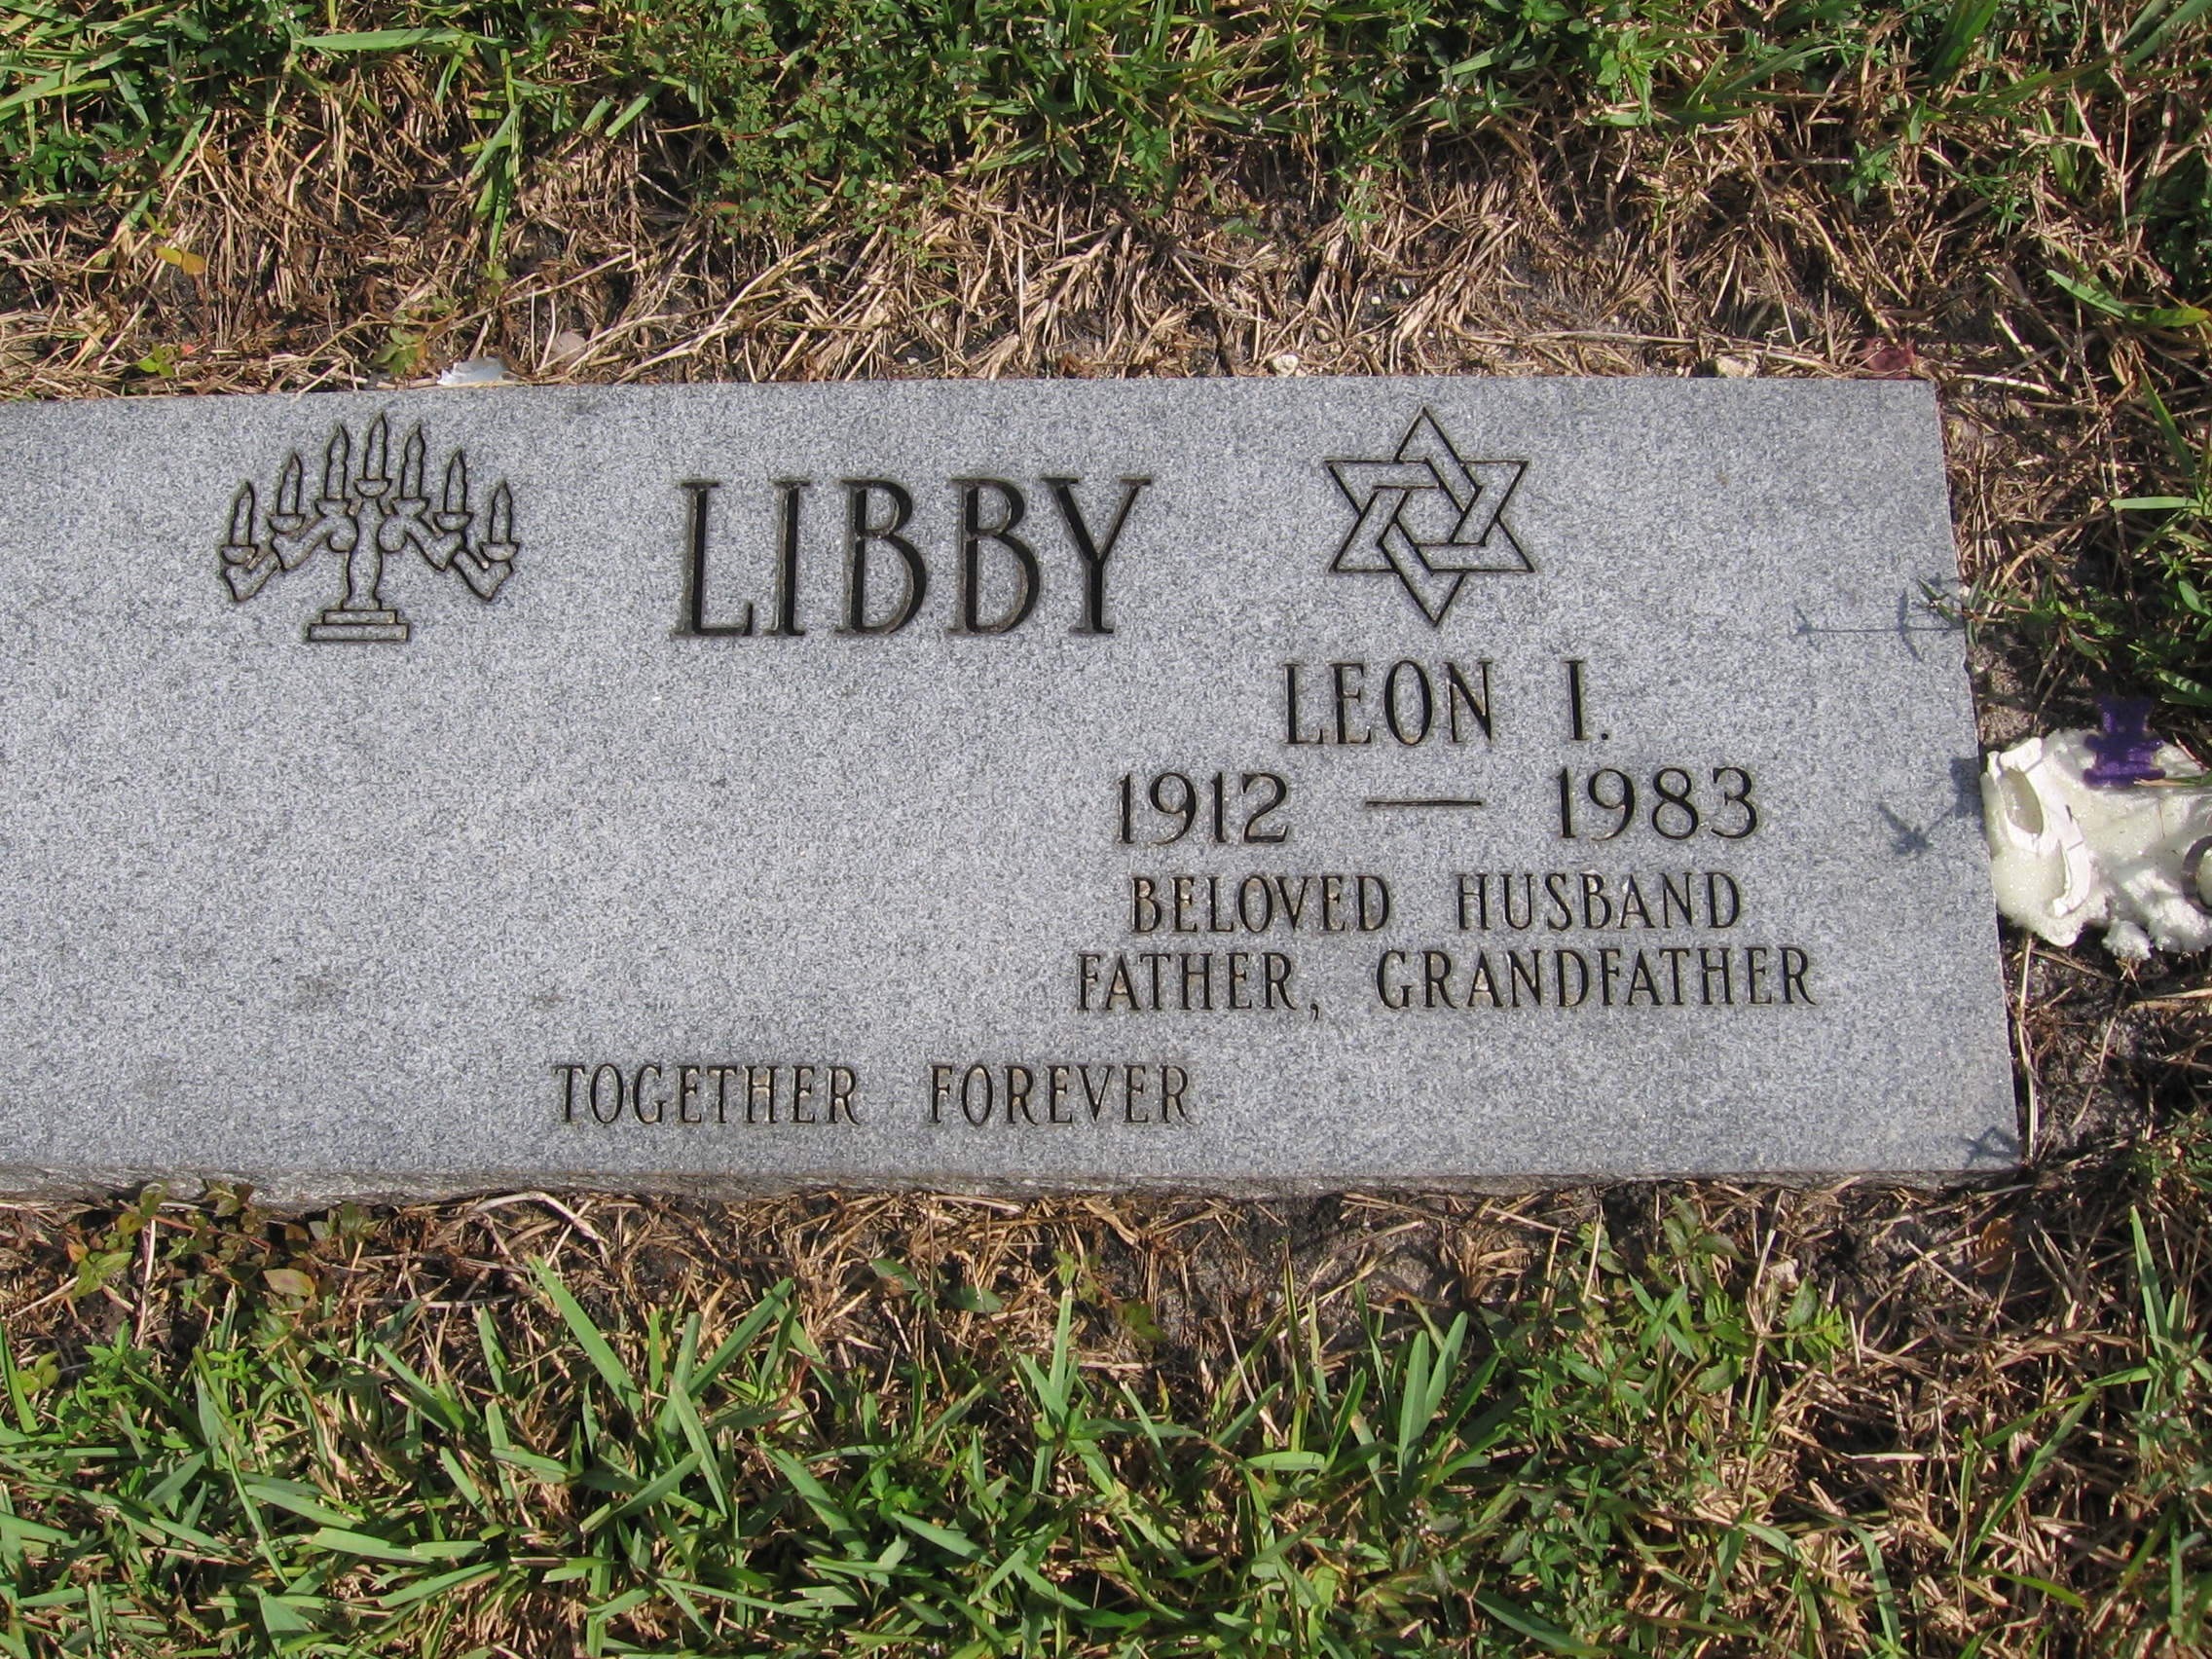 Leon I Libby